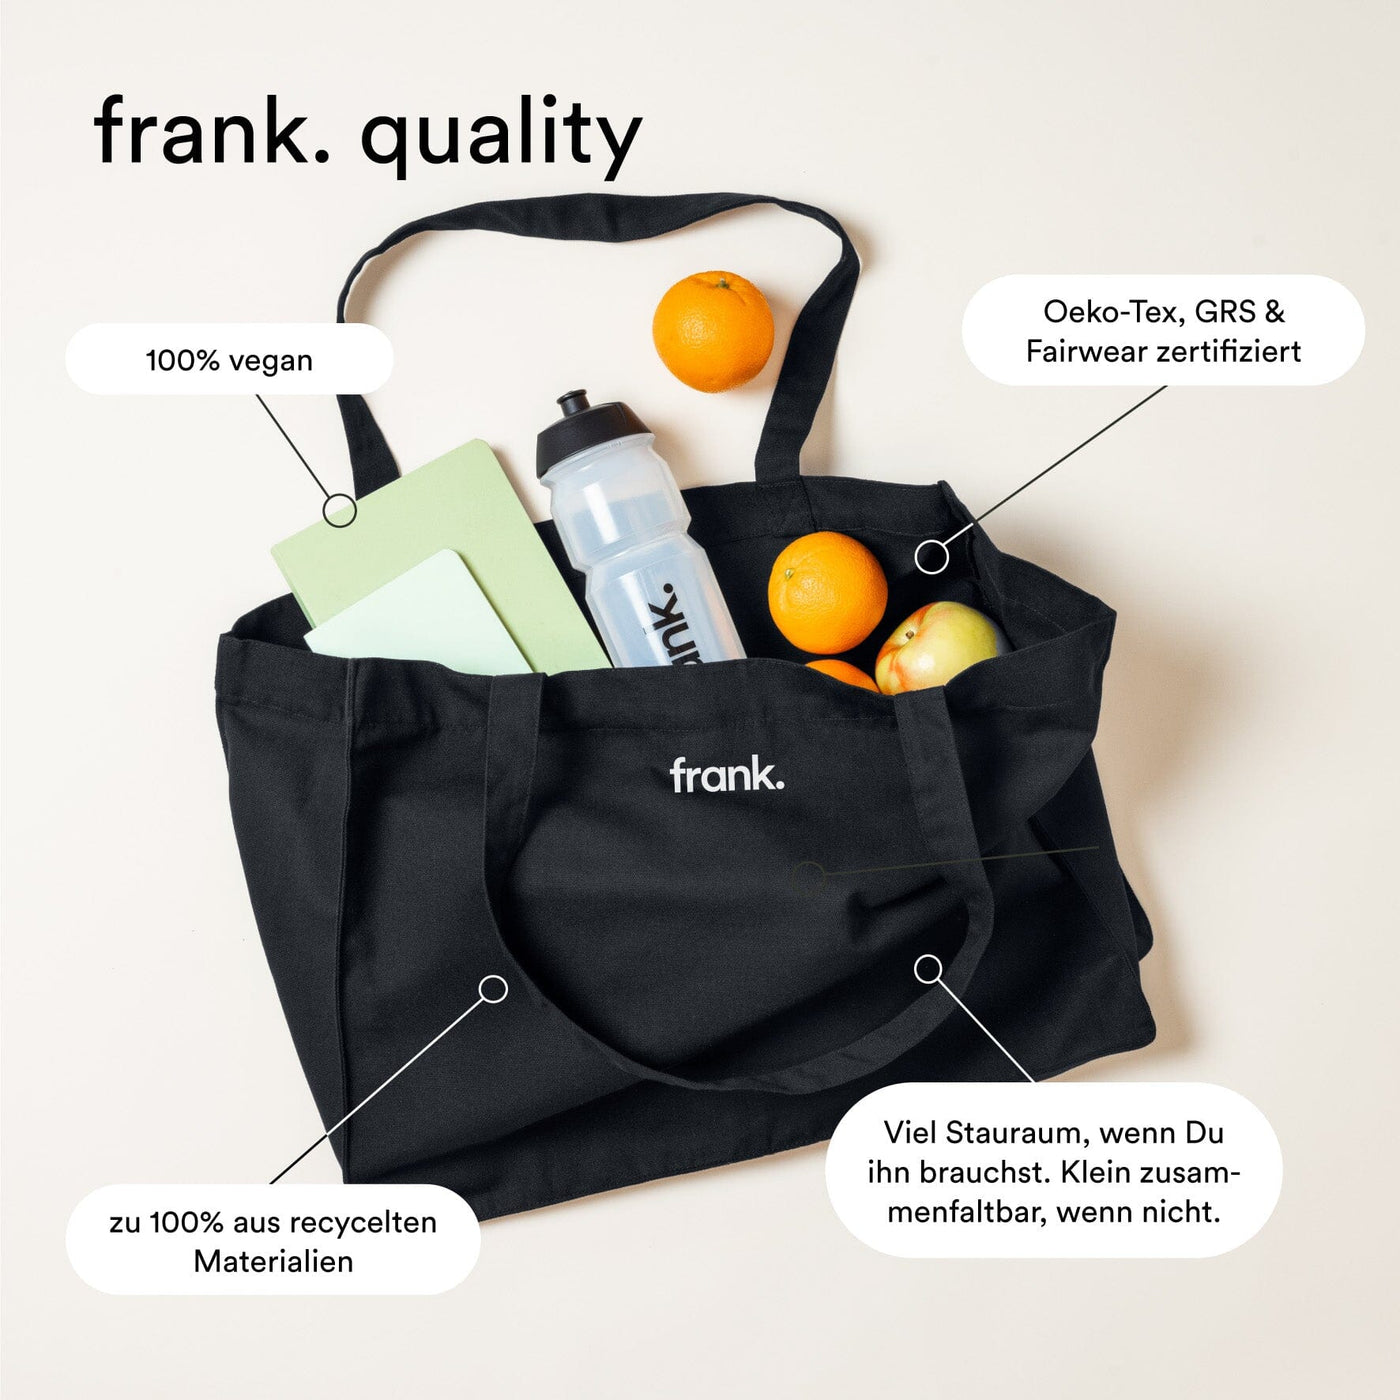 Darstellung der gebotenen Qualität der Stofftasche von frank.